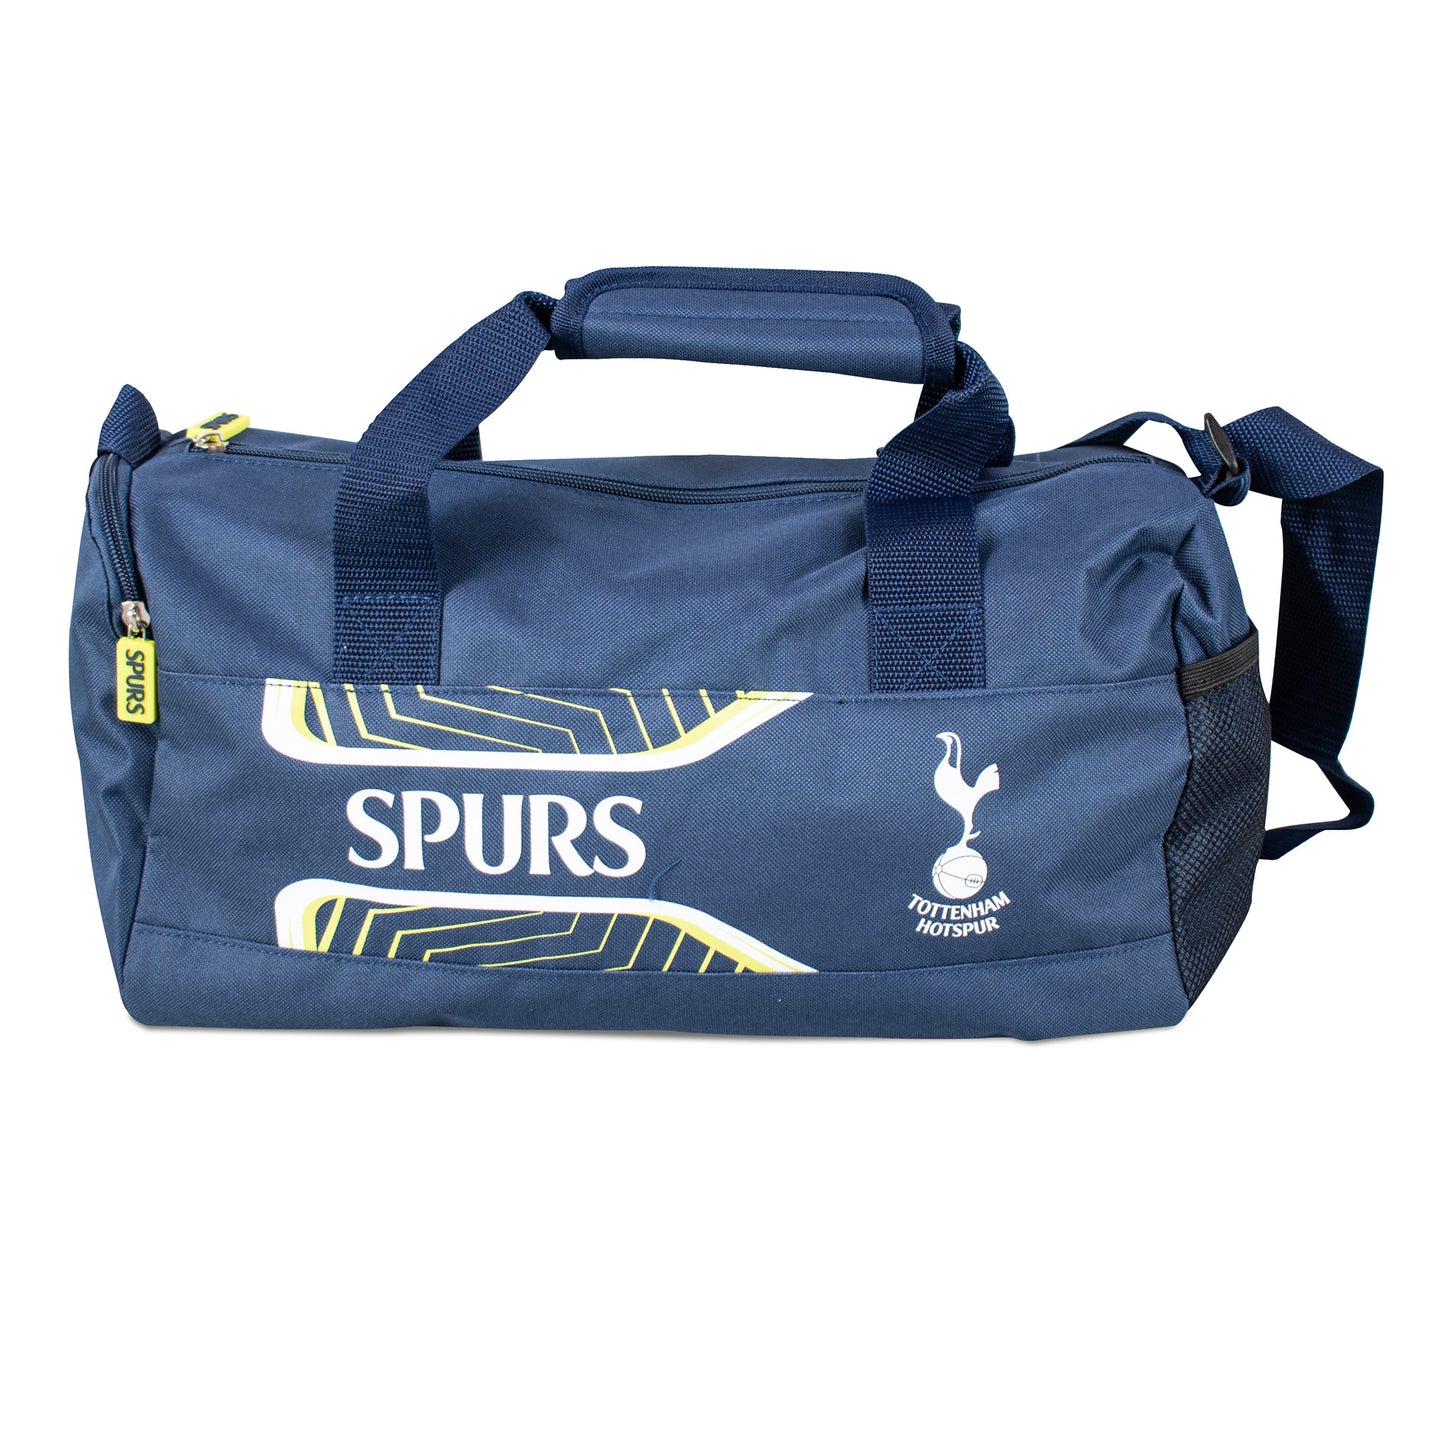 Tottenham Hotspur Flash Duffel Bag